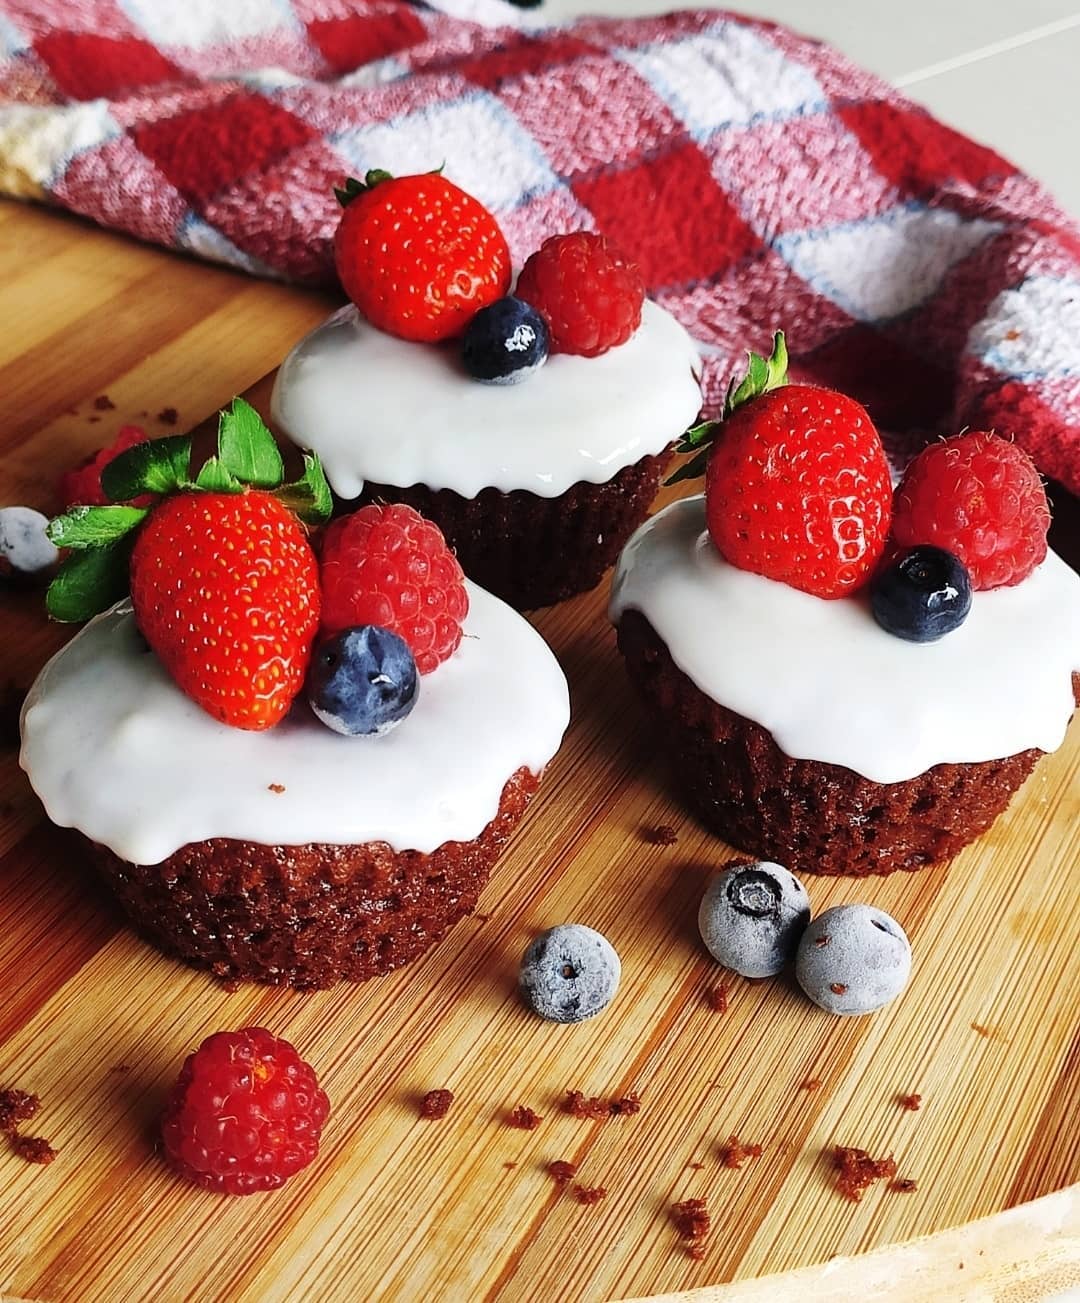 Cupcake de chocolate receita - Coberto com frutas vermelhas